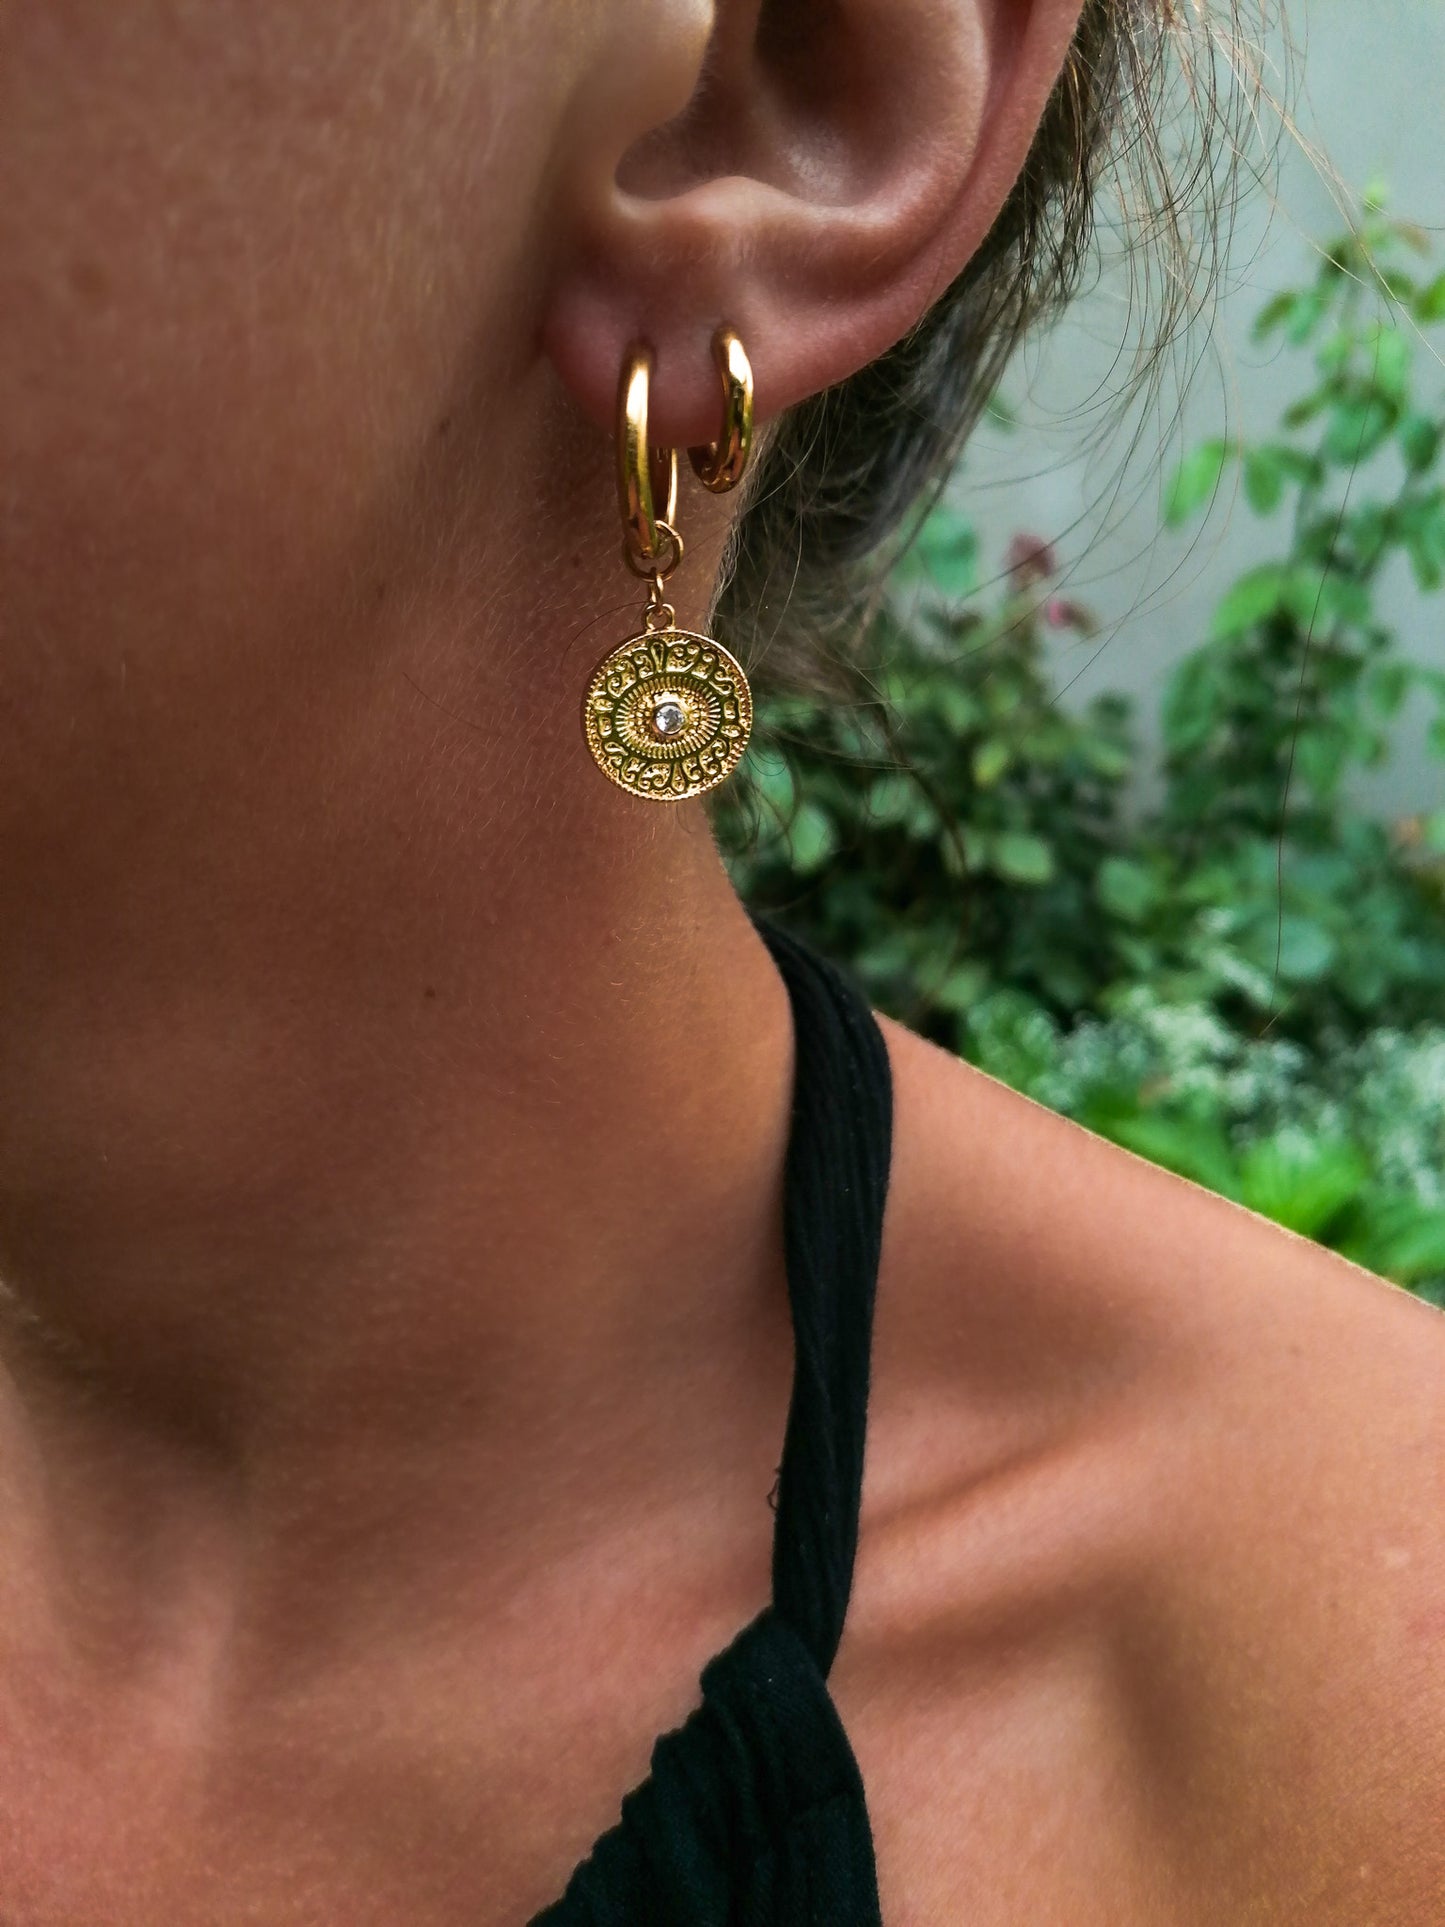 Kamali earrings